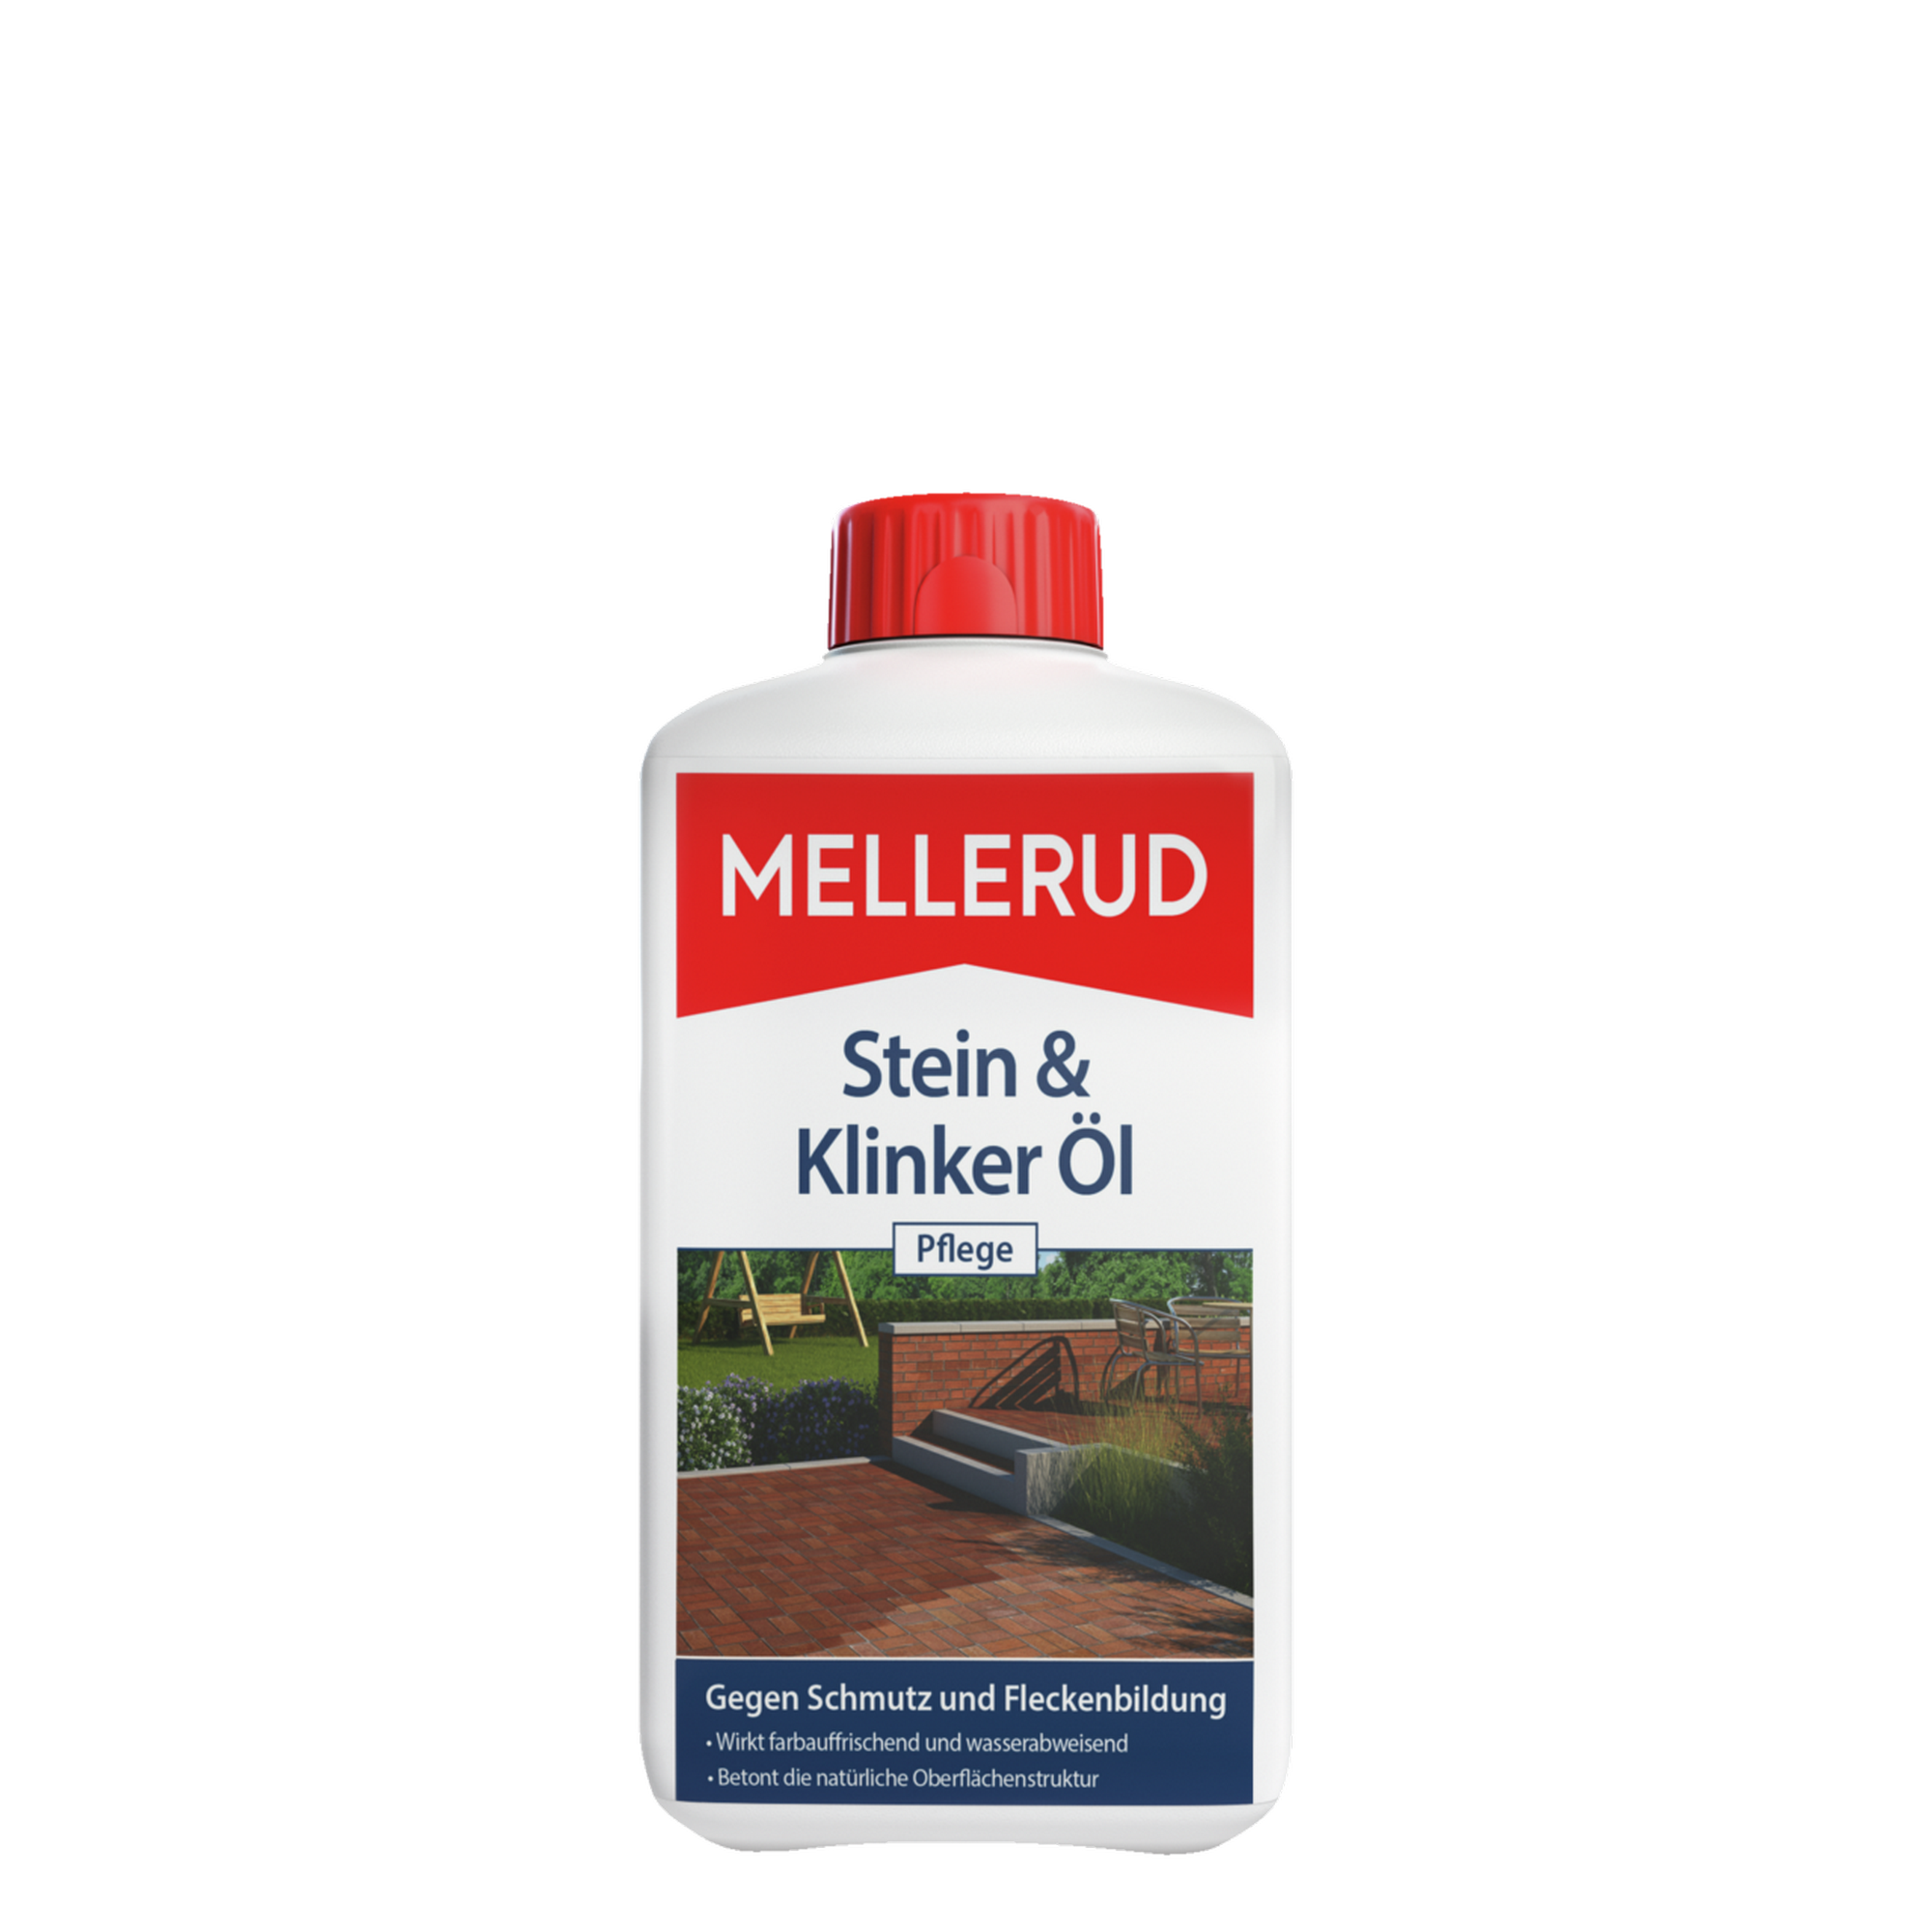 Klinker- und Keramiköl "Spezialpflege" 1000 ml + product picture